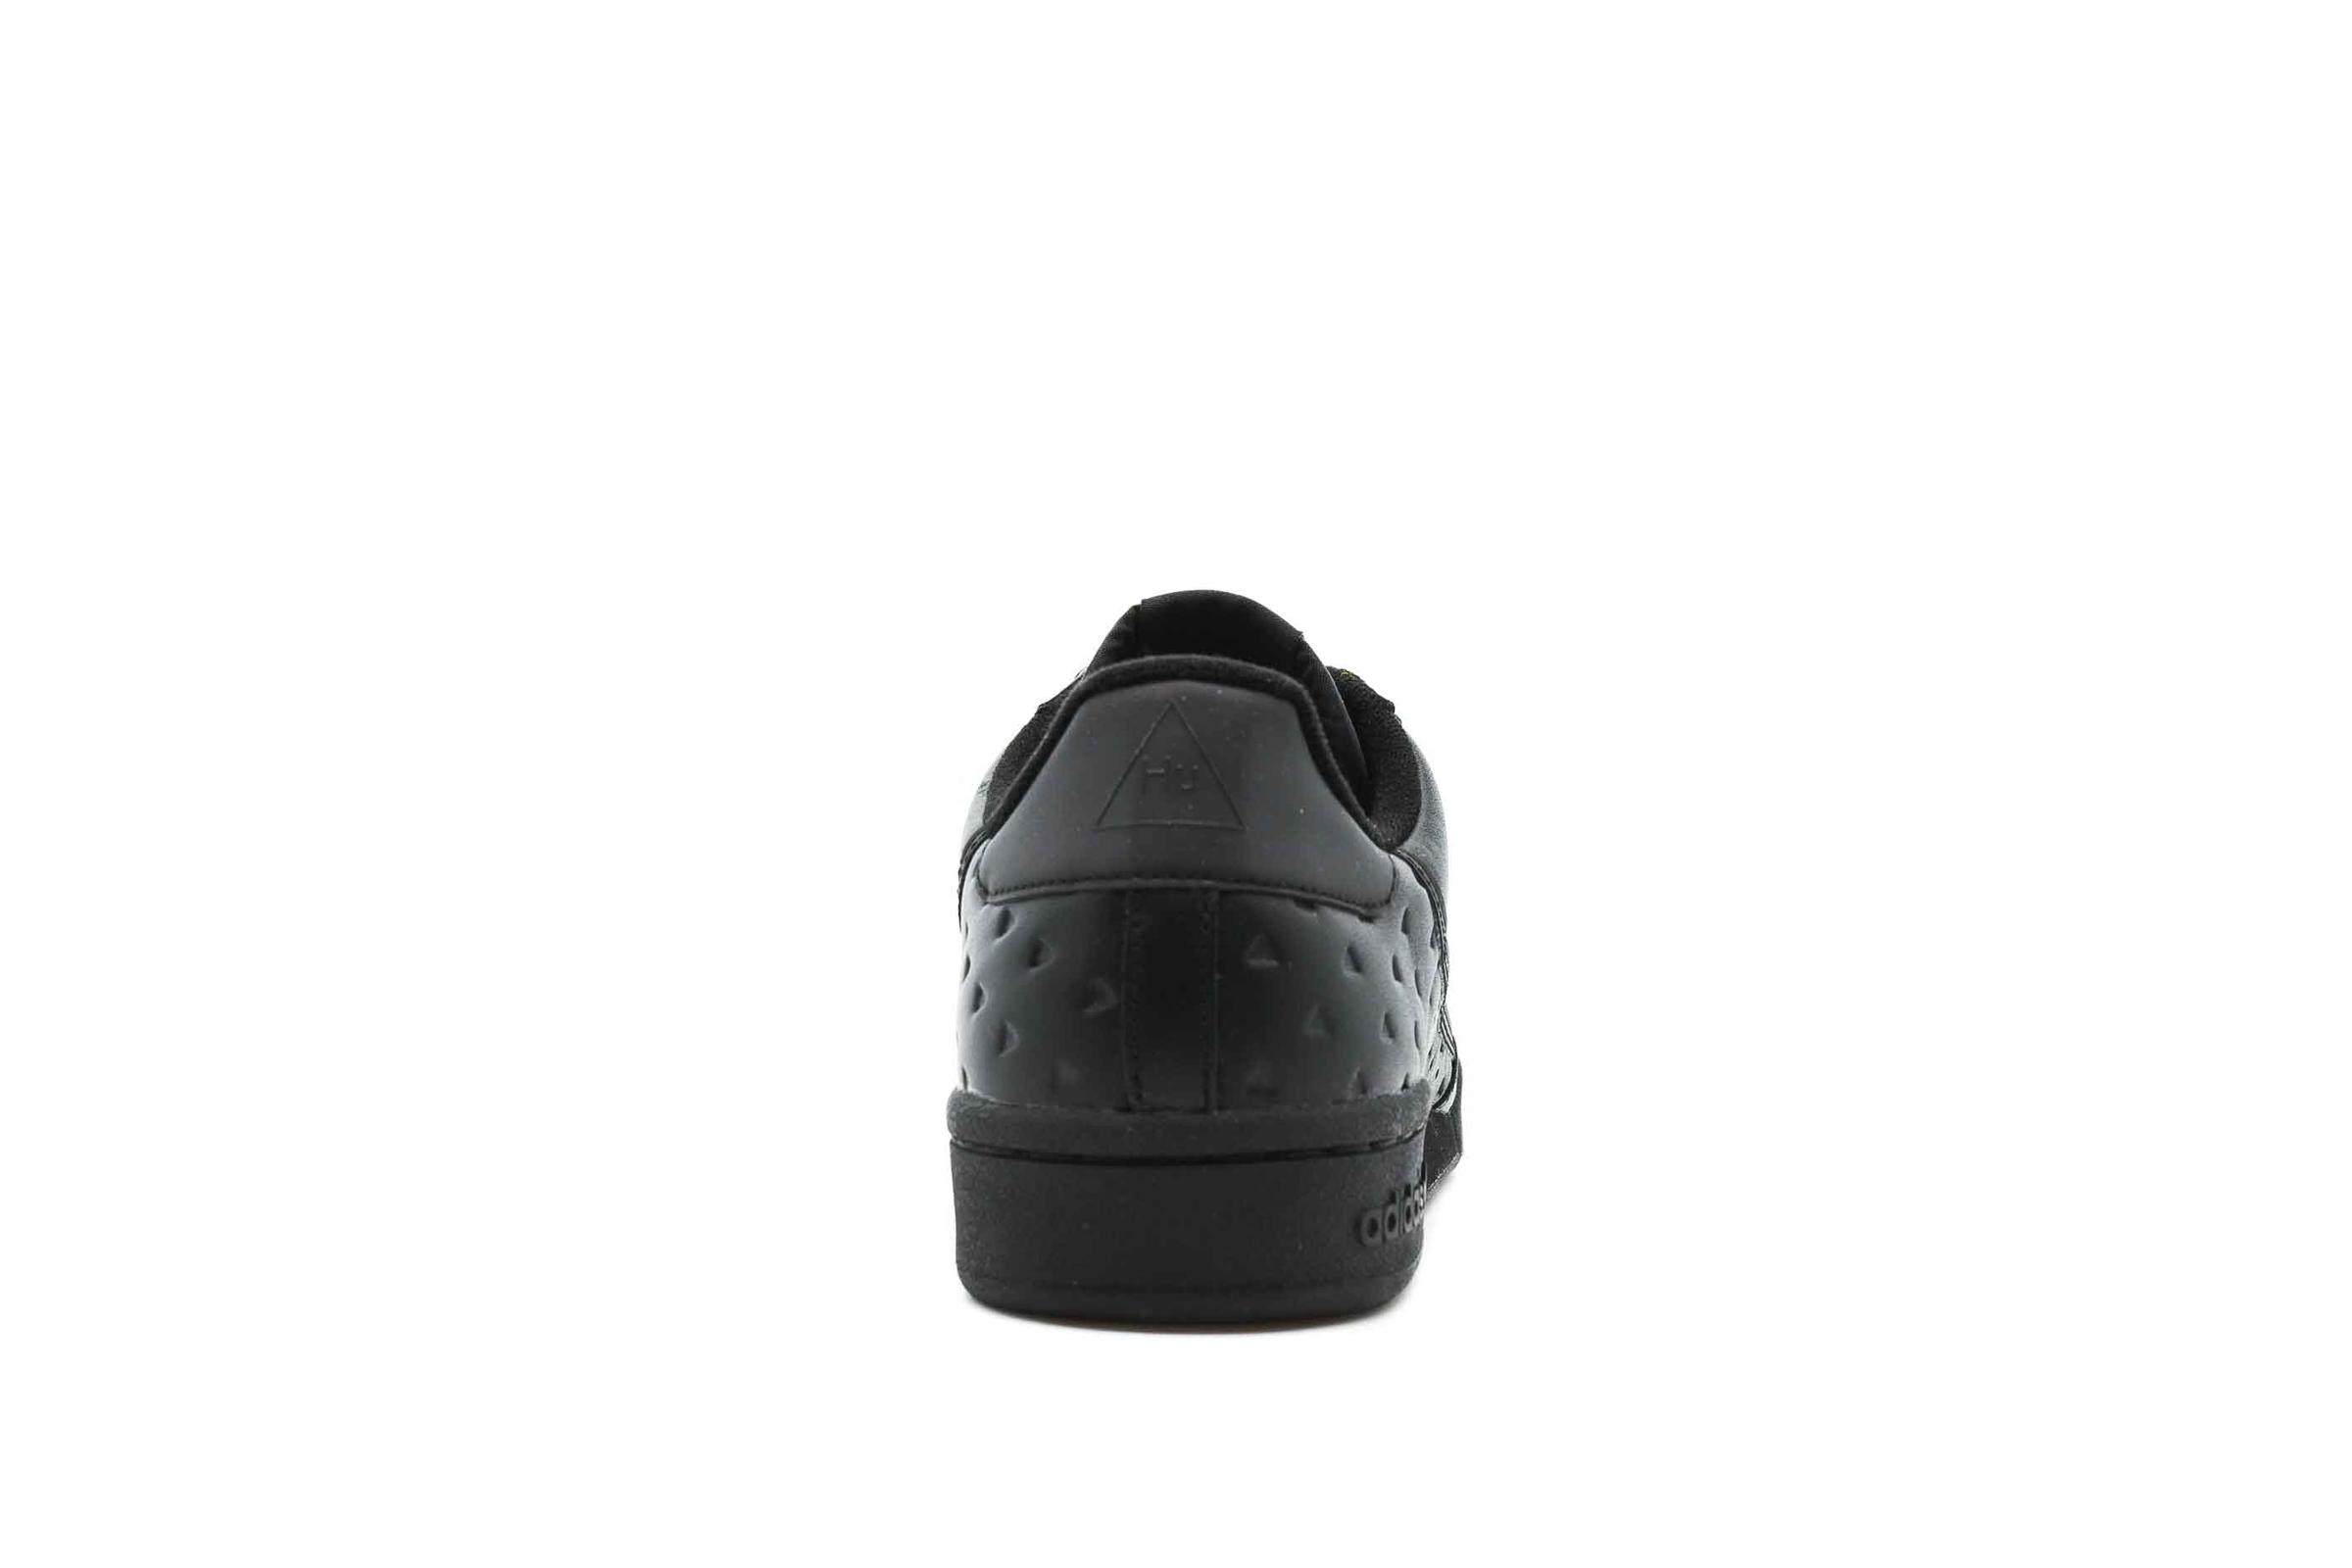 adidas Originals x HU CONTINENTAL 80 "CORE BLACK"